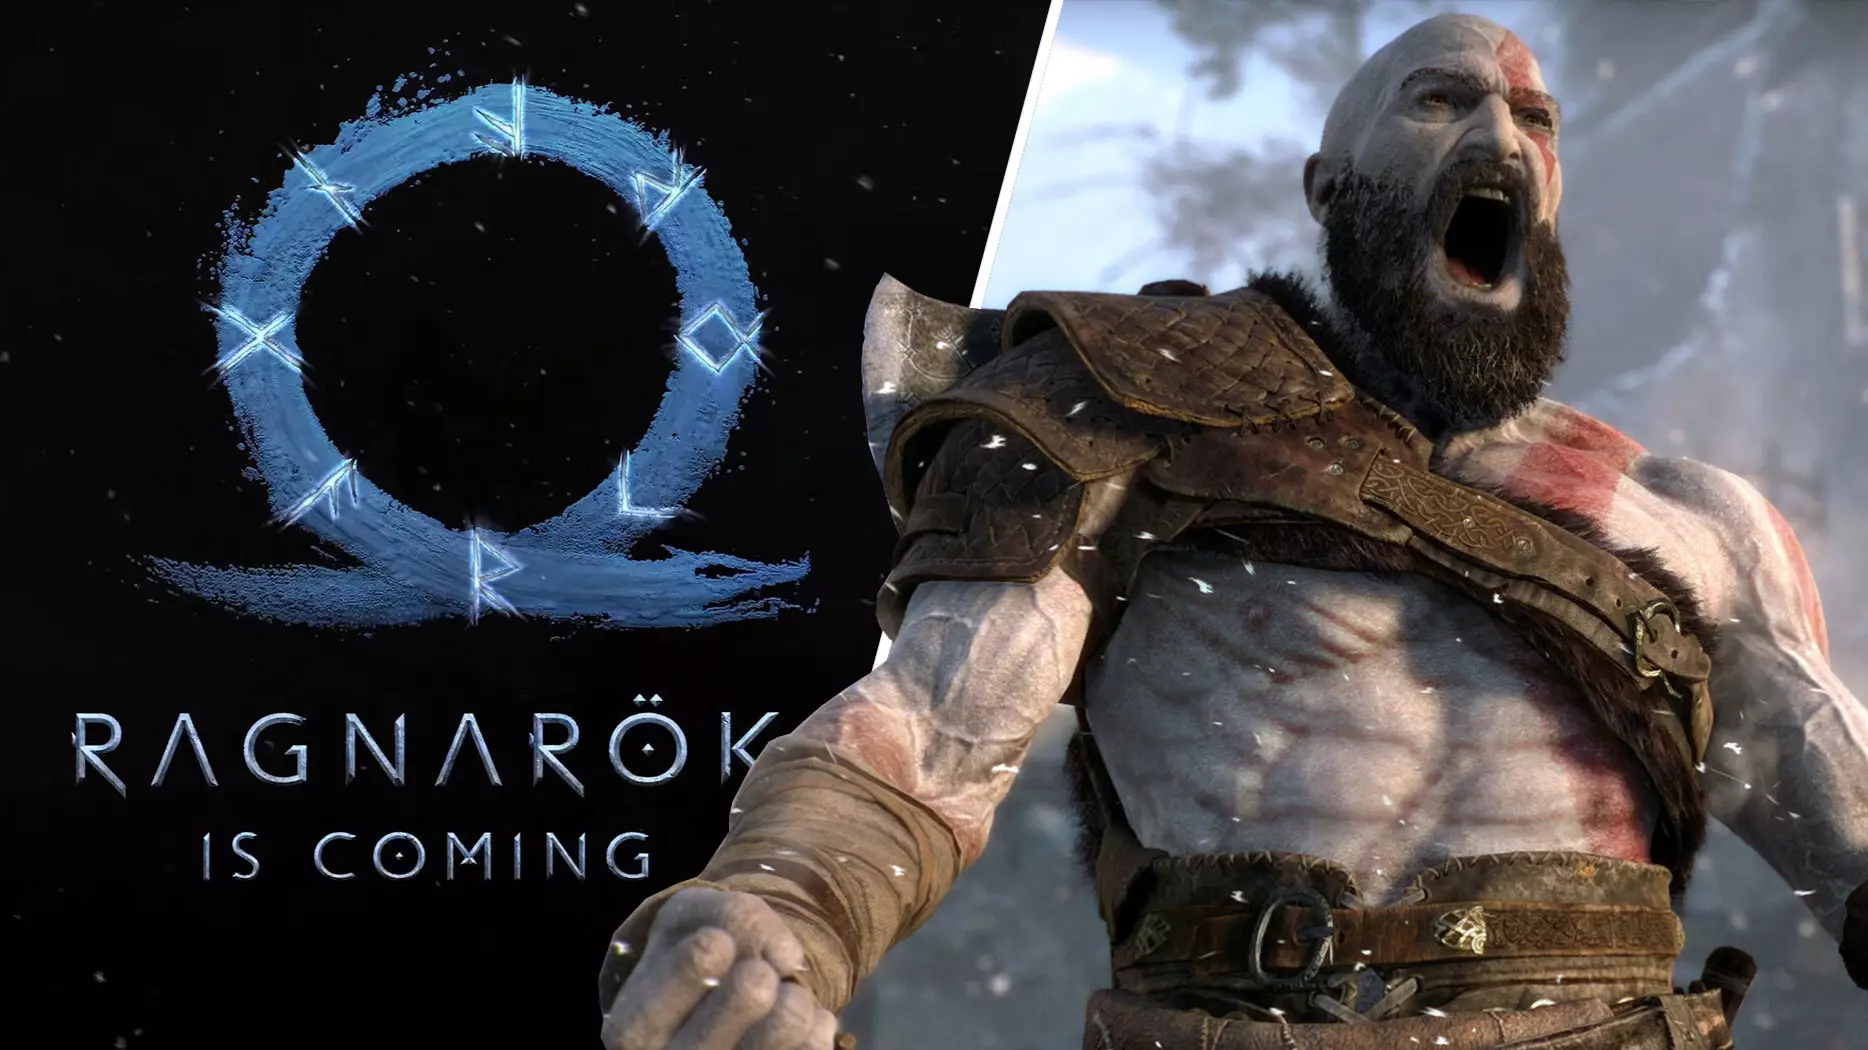 'God Of War' Studio Is Working On A Second Project Alongside 'Ragnarök'